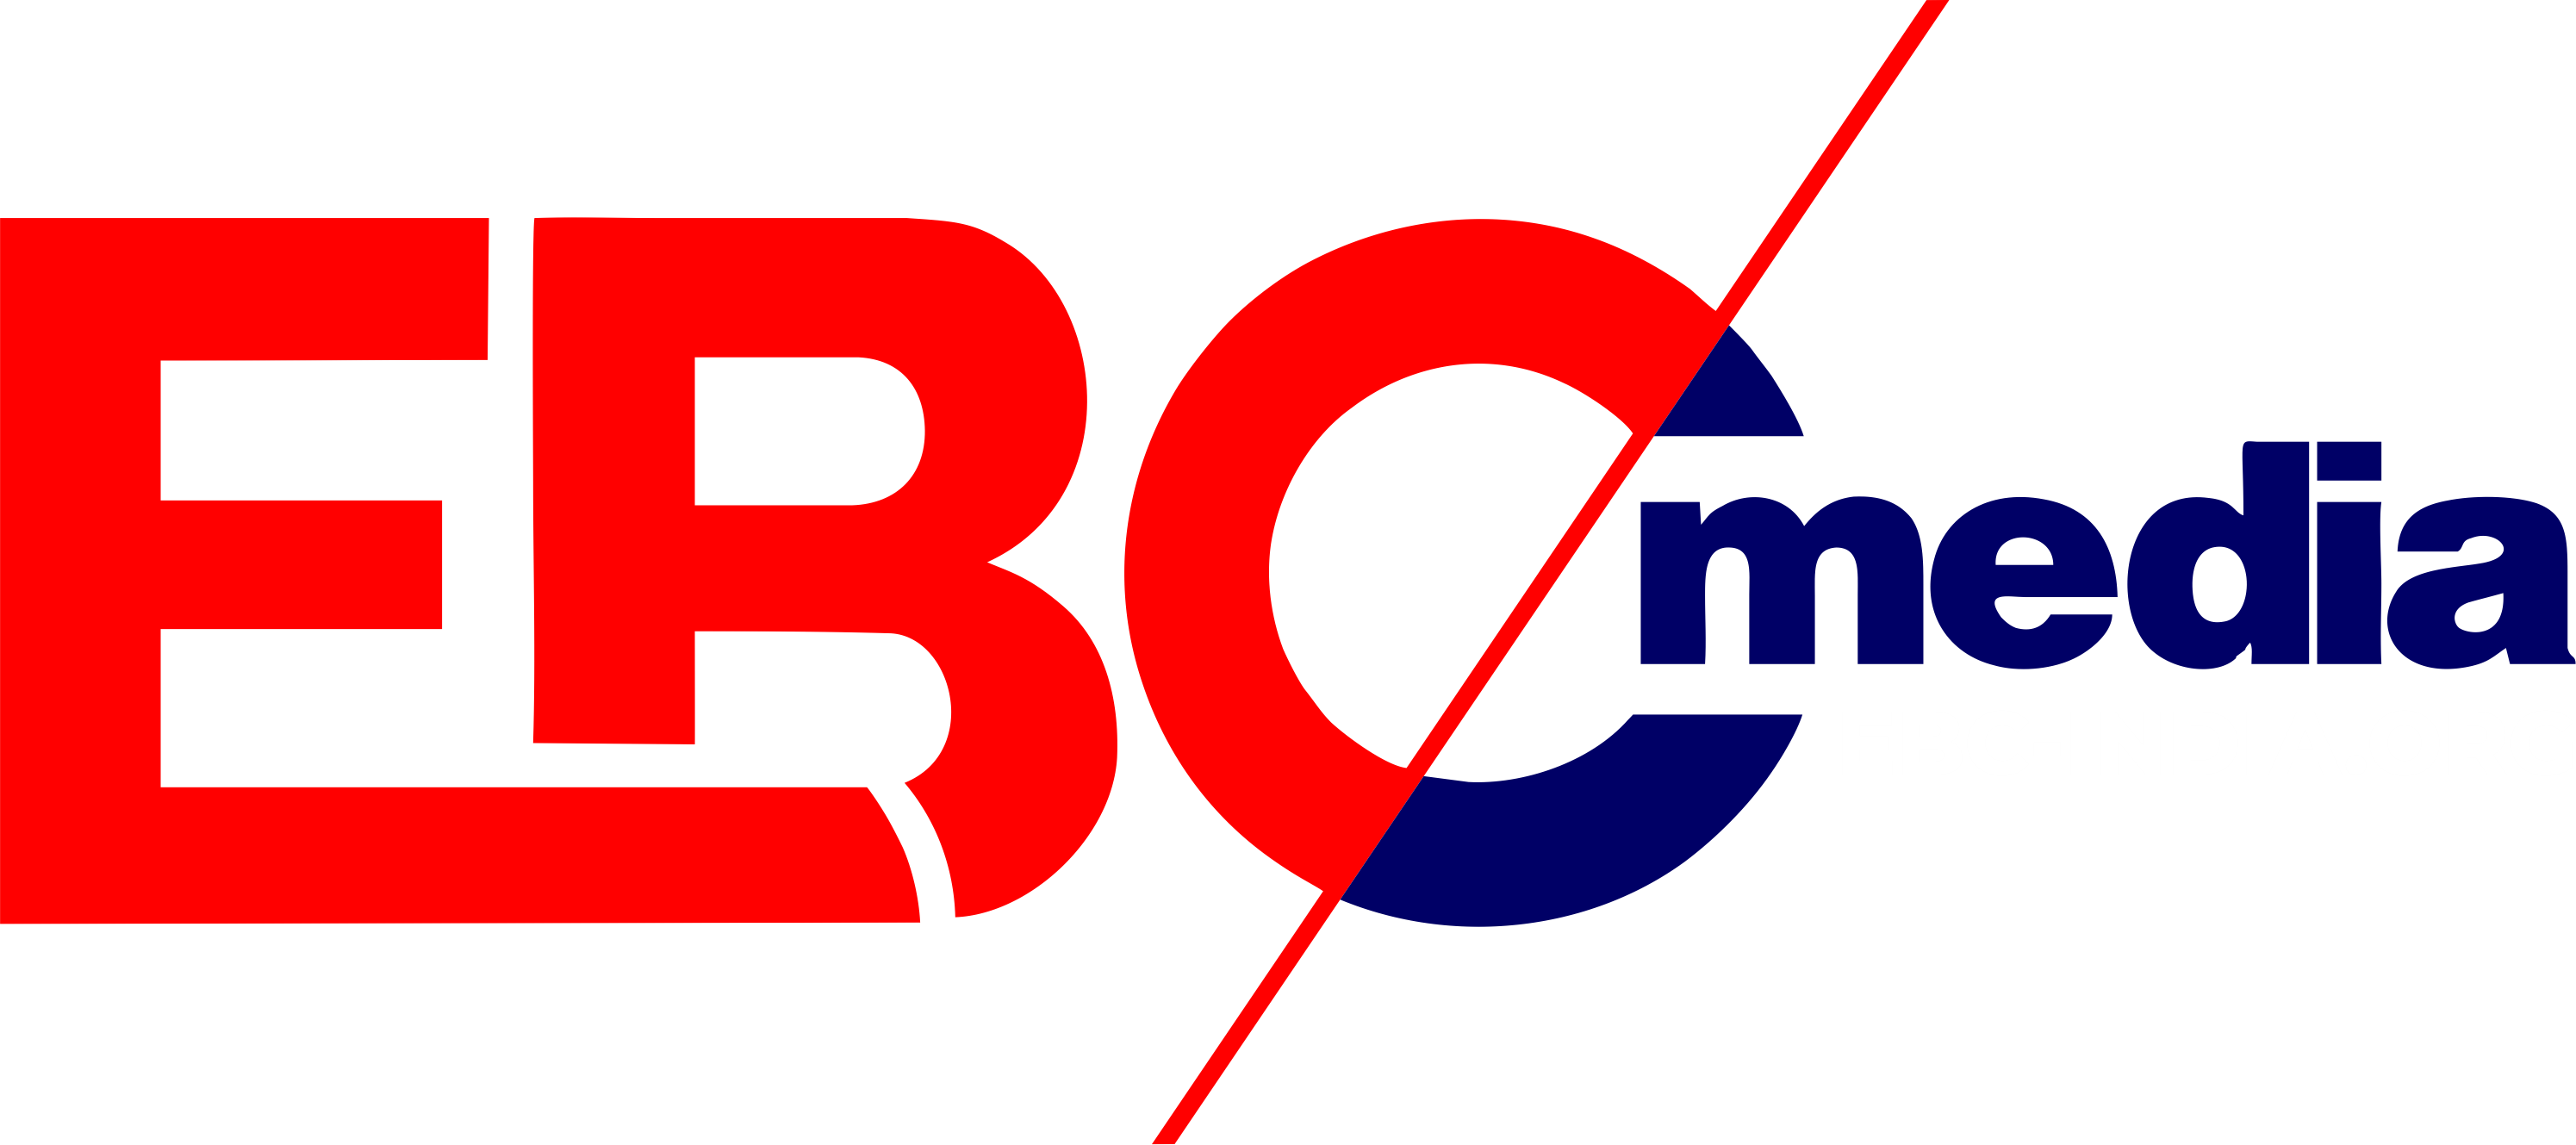 EBC Media 2020 White website